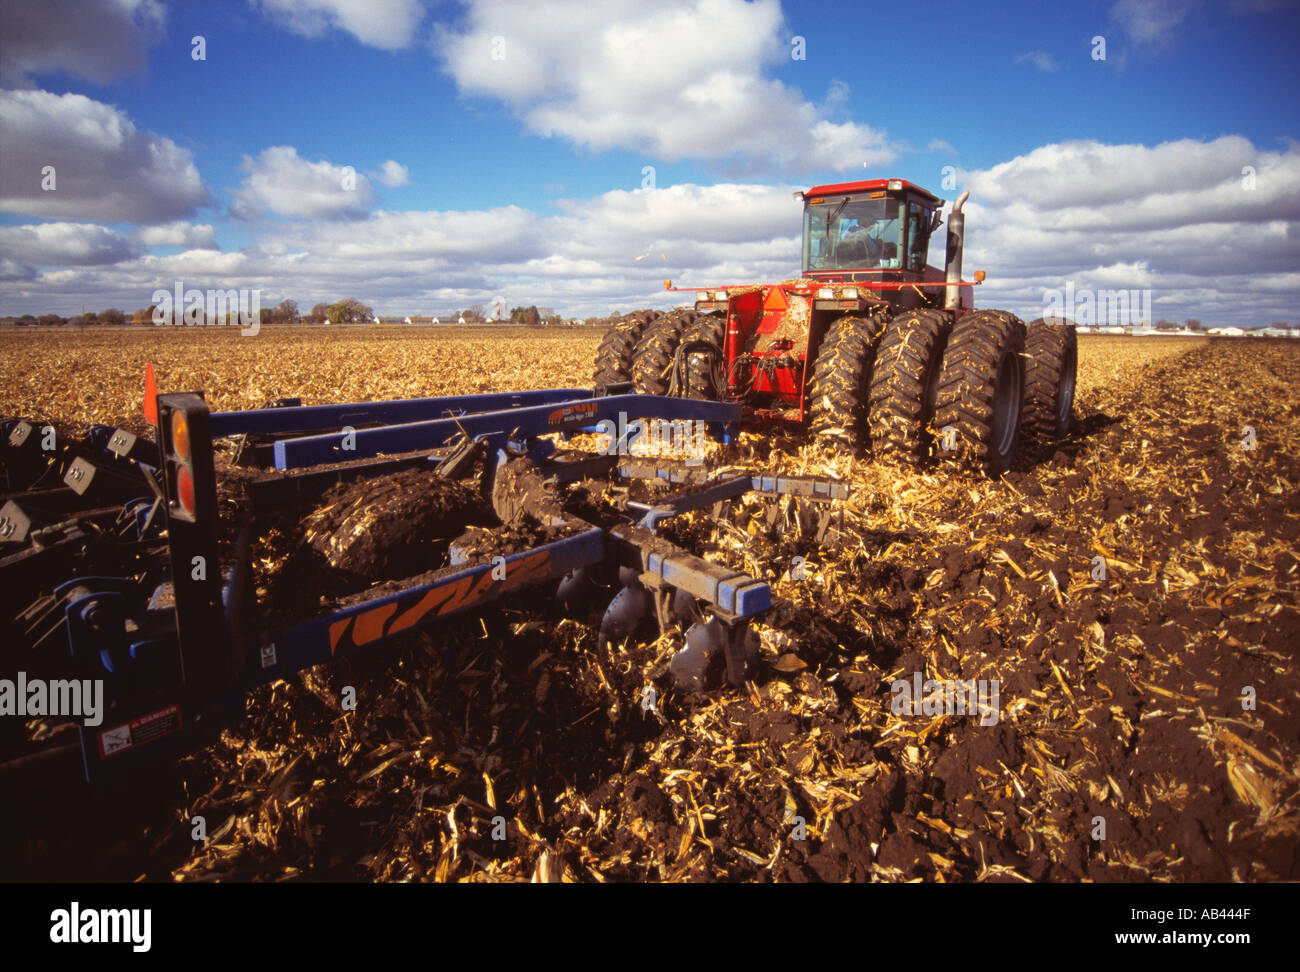 Landwirtschaft - 4WD Traktor Meißel pflügen ein Feld Mais Stoppeln im Herbst in Vorbereitung auf den Winter Ruheperiode / Wiscon Stockfoto